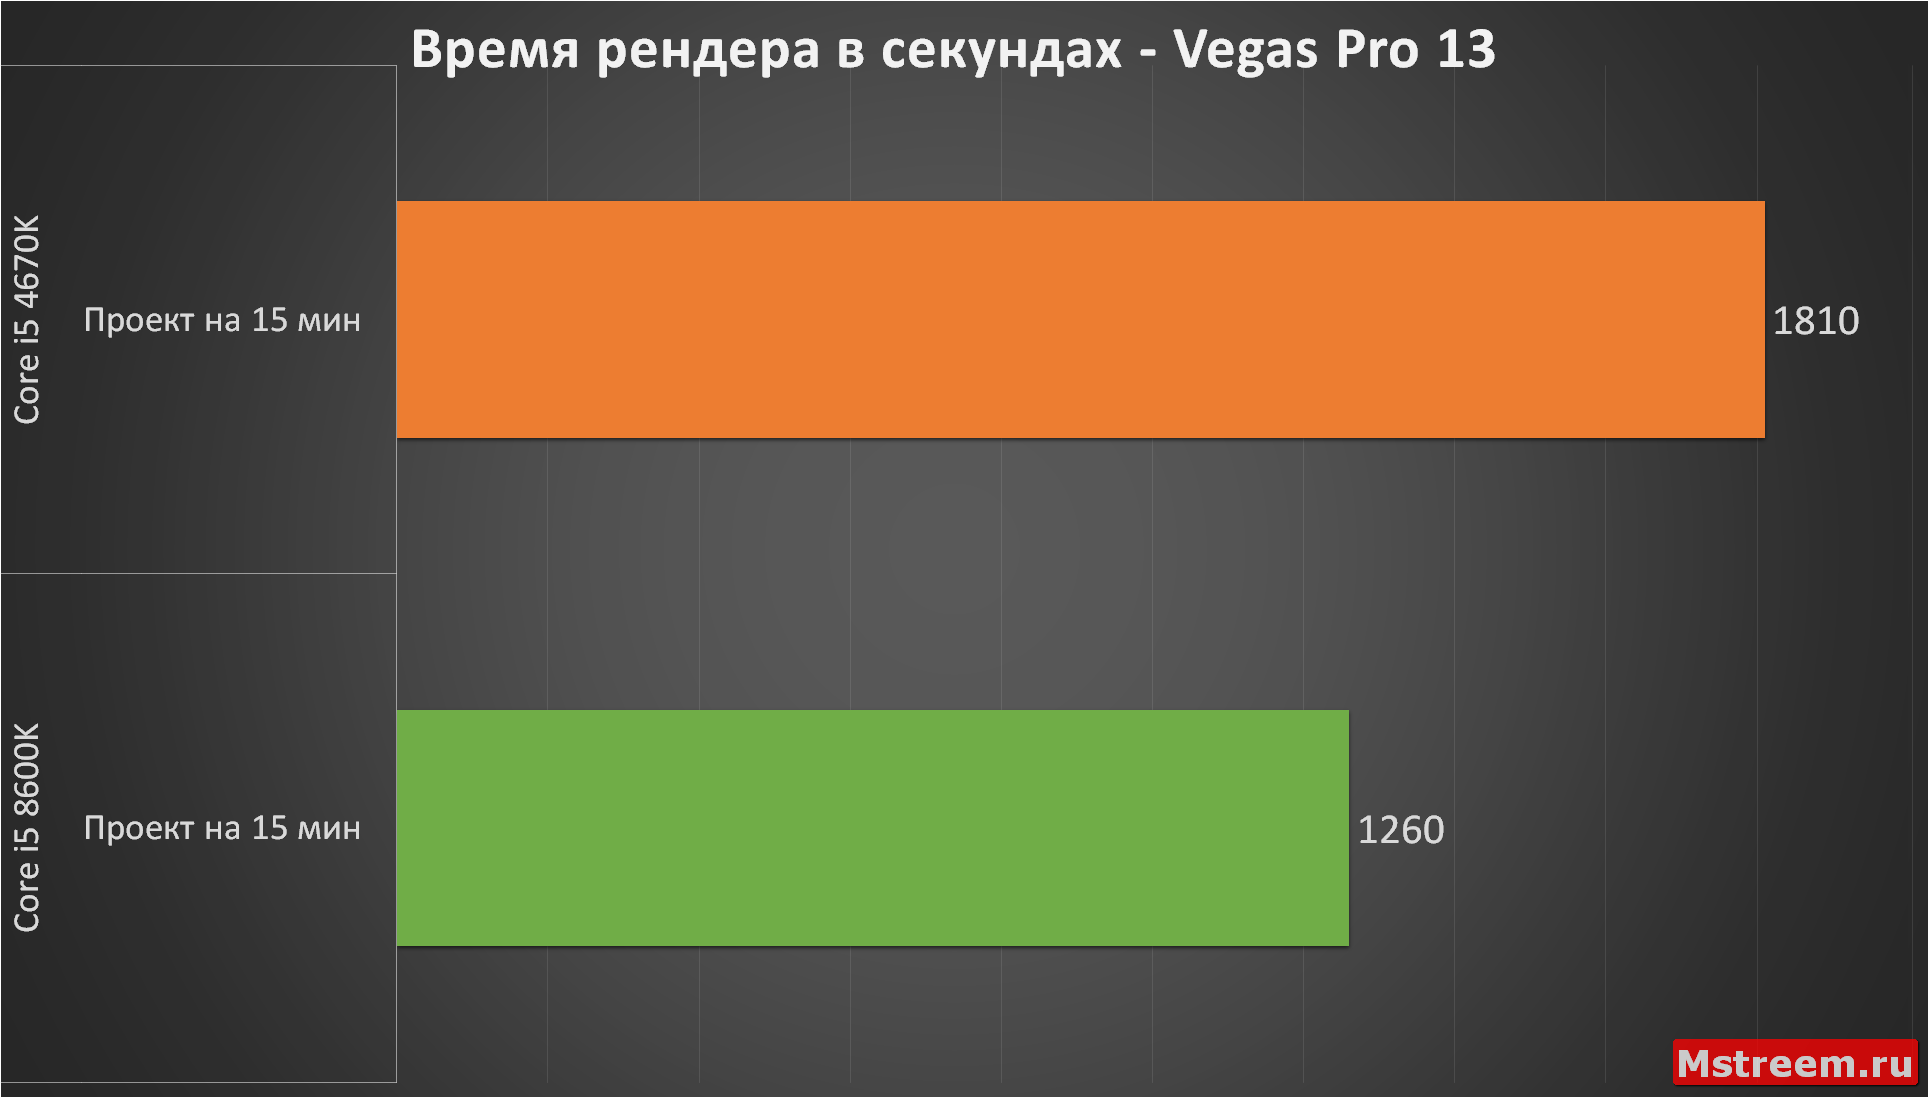 Время рендера в Vegas Pro 13 (Intel Core i5 4670K VS 8600K)